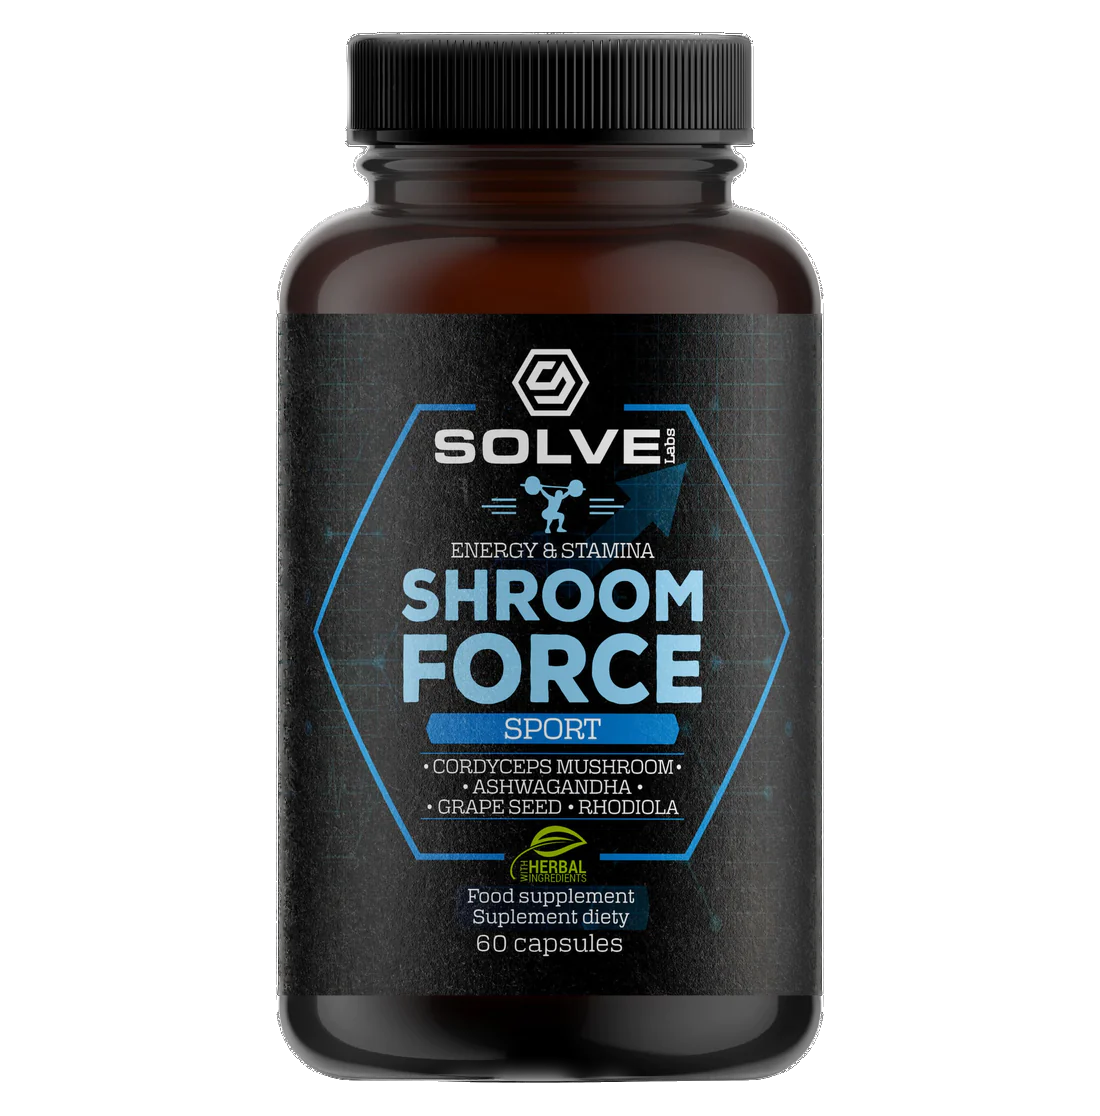 Shroom Force Sport cordyceps mushrooms and adaptogens